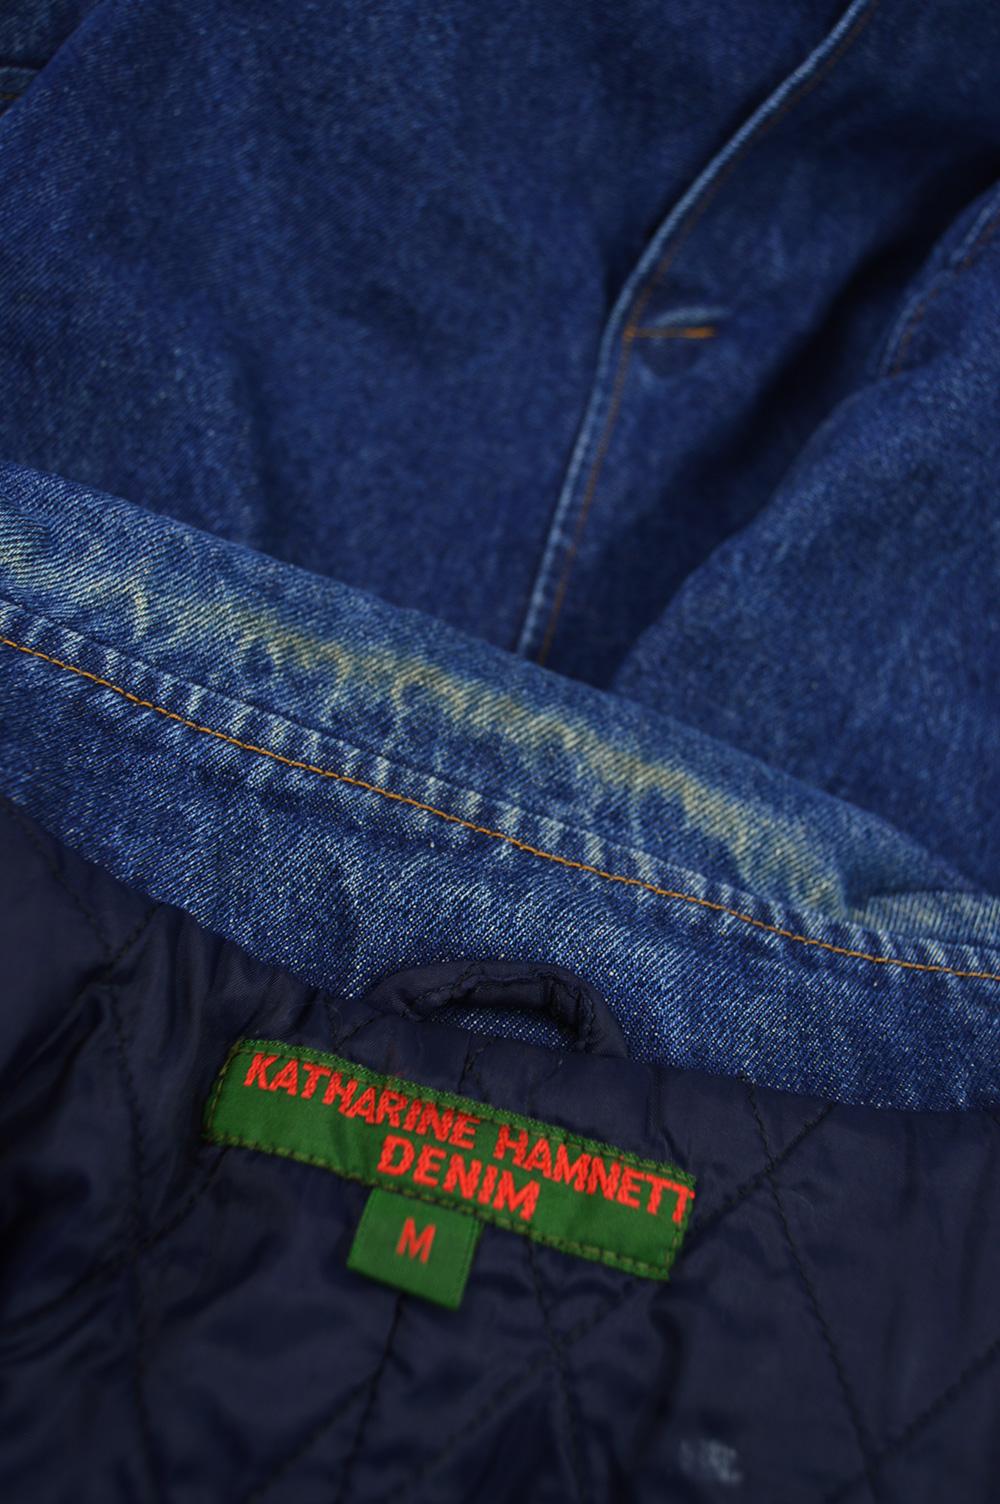 Katharine Hamnett Men's Vintage Double Breasted Blue Denim Pea Coat, 1990s For Sale 5